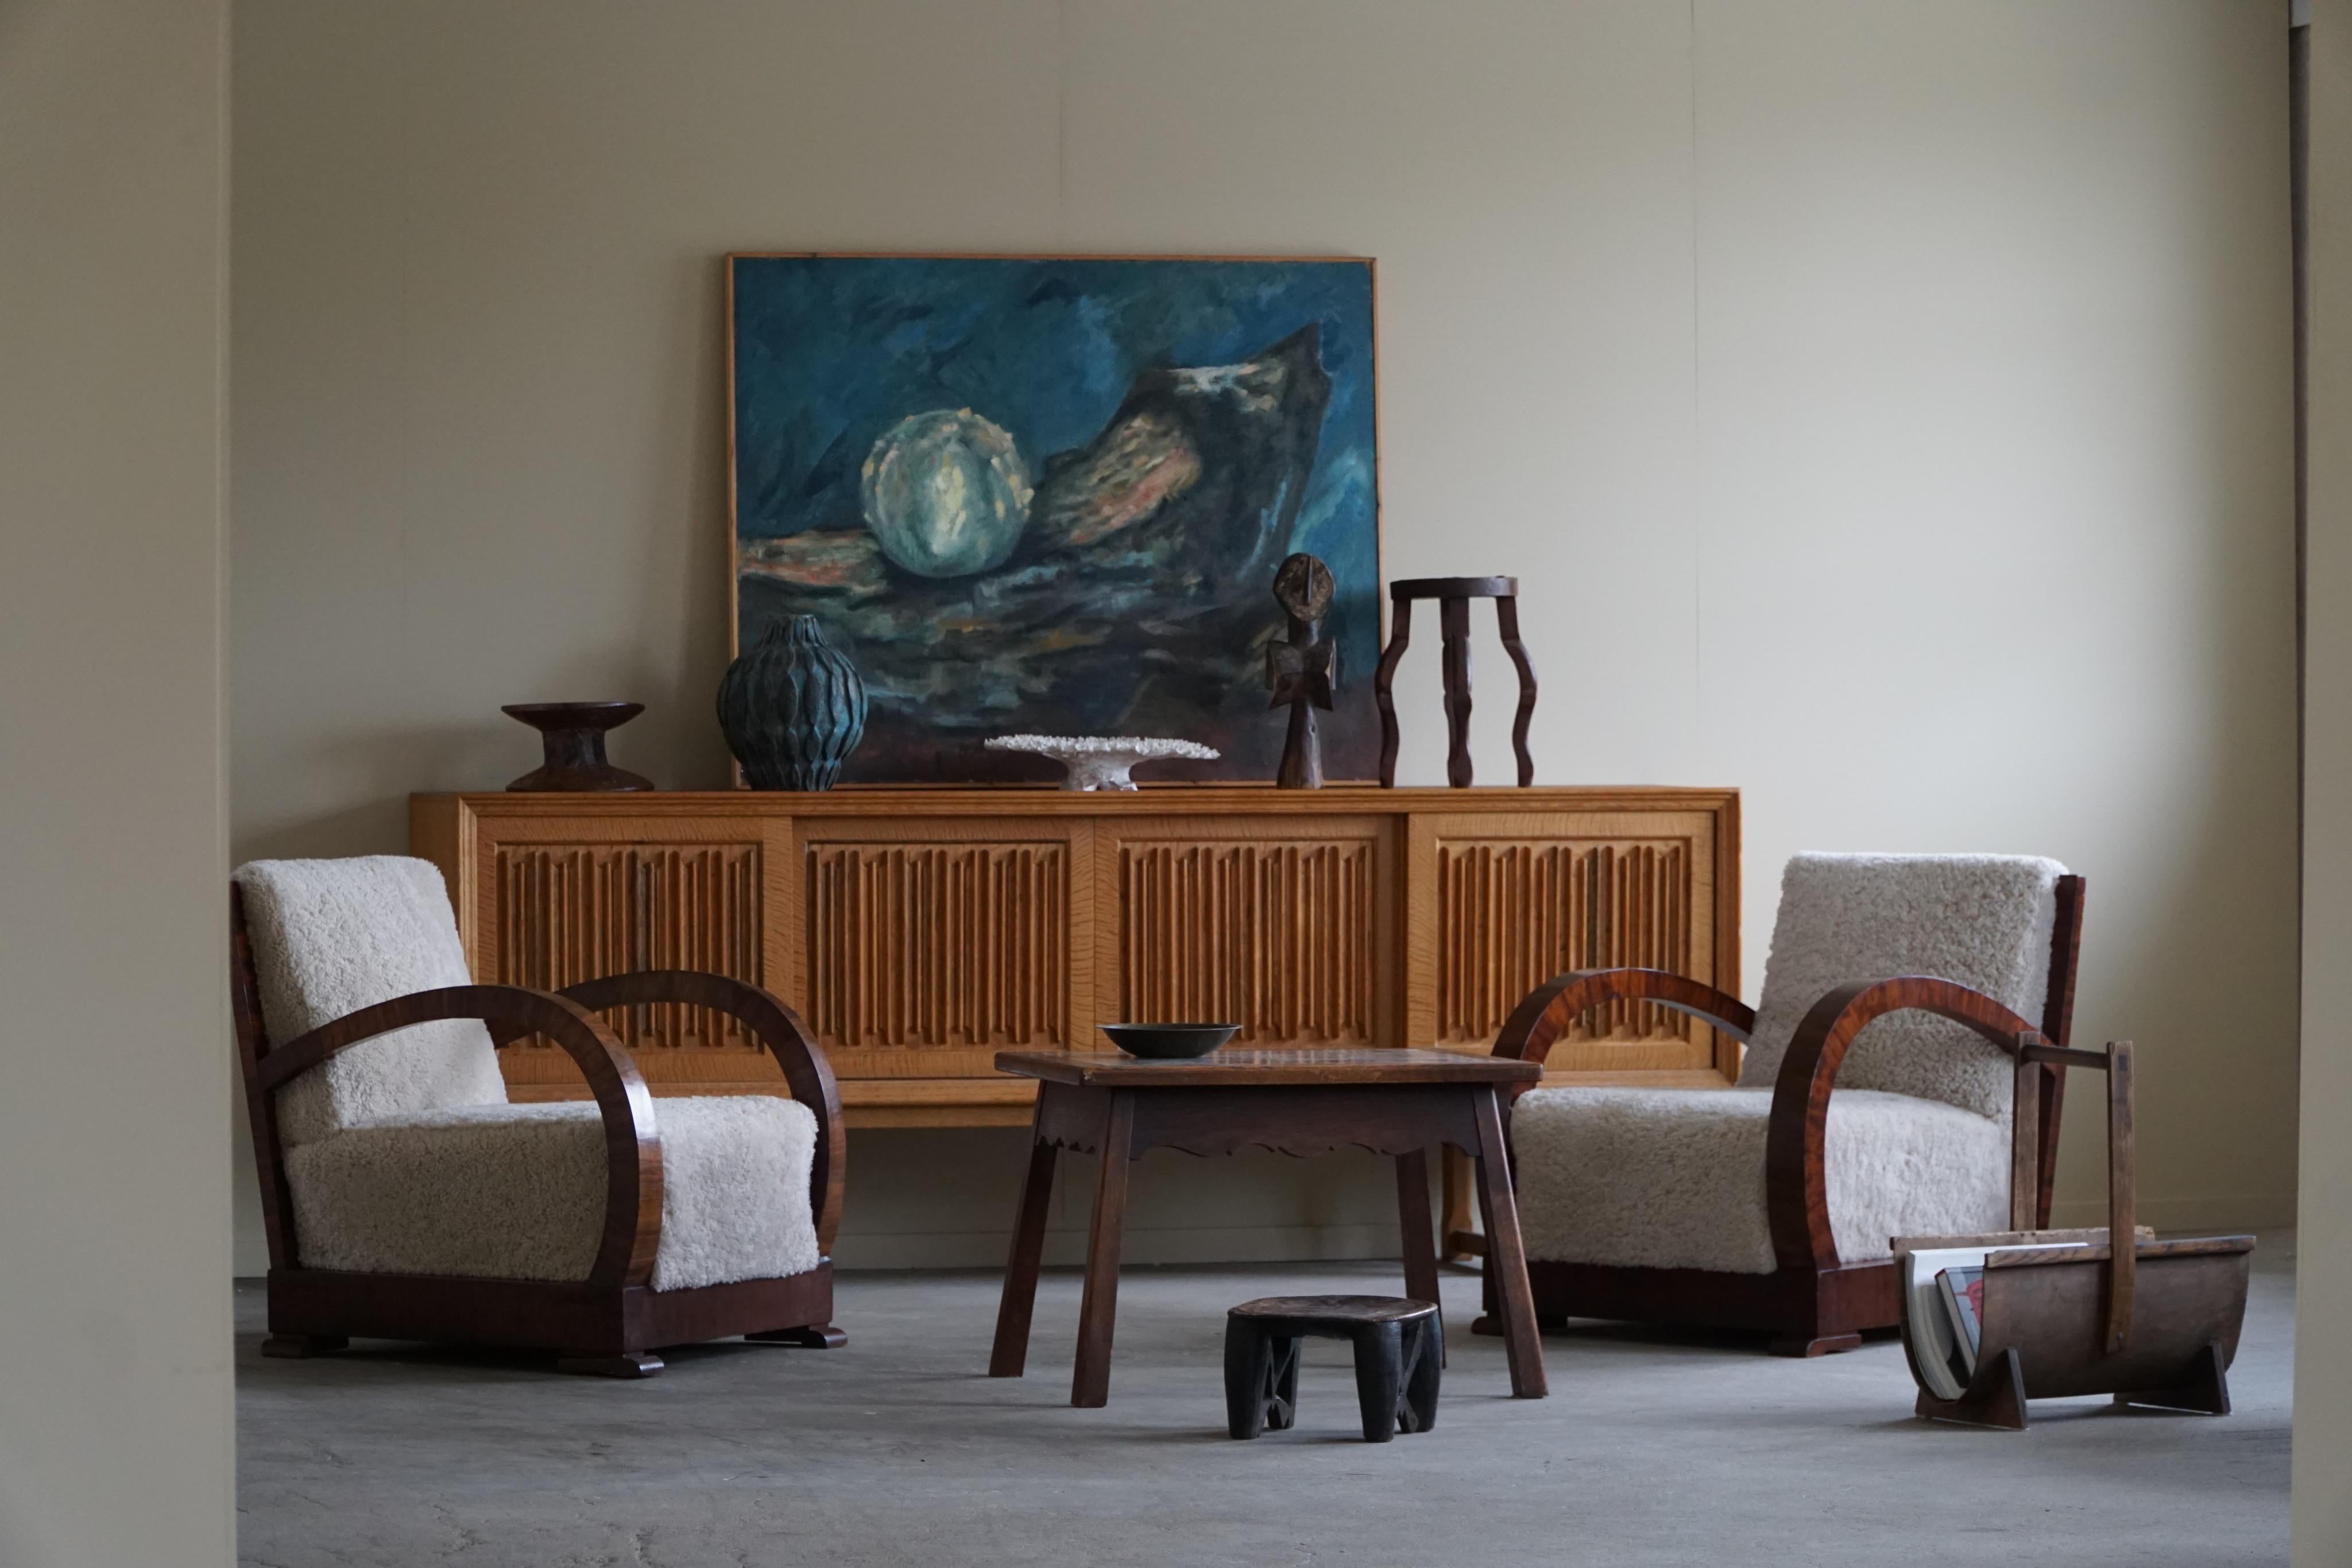 Paire de chaises de salon Art Déco courbées, avec accoudoir en noyer, fabriquées dans les années 1930 par un ébéniste danois. Les chaises ont été récemment retapissées en luxueuse laine d'agneau de chez ADS, ajoutant une touche de chaleur et de